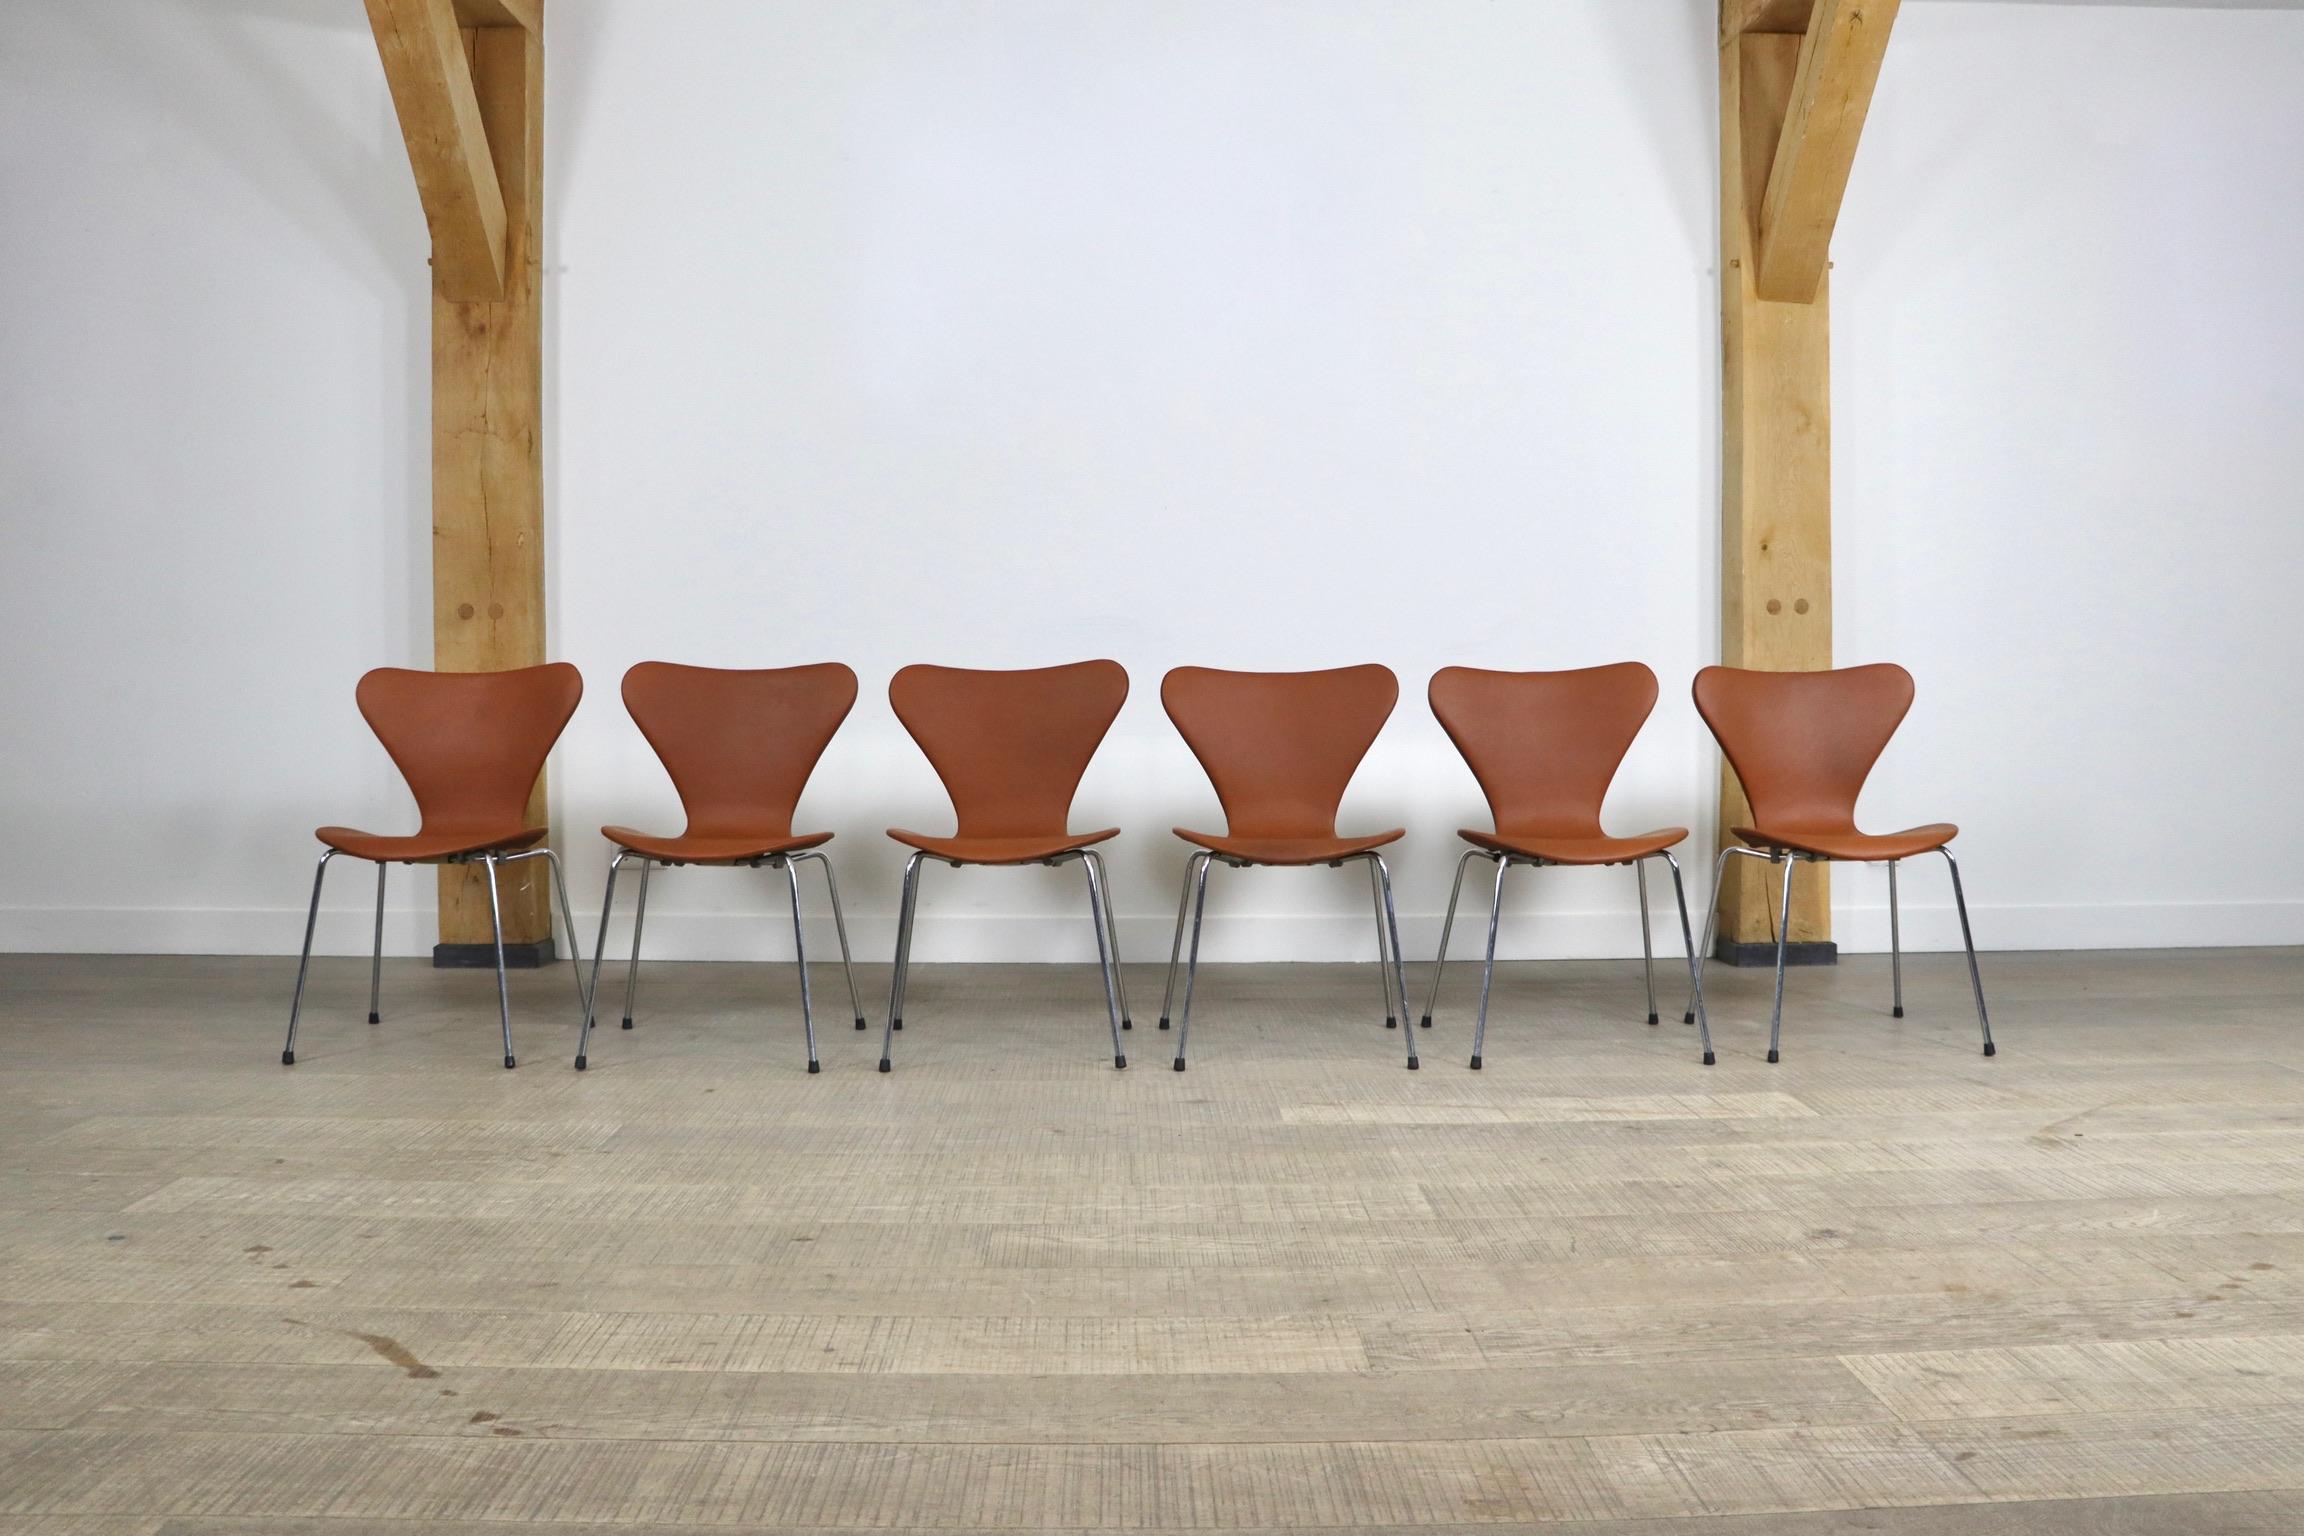 Erstaunlicher Satz von 6 Butterfly-Stühlen, entworfen von Arne Jacobsen für Fritz Hansen, Dänemark 1979. Diese Stühle sind mit wunderschönem cognacfarbenem Anilinleder bezogen und befinden sich in einem ausgezeichneten Zustand. Ein minimalistisches,